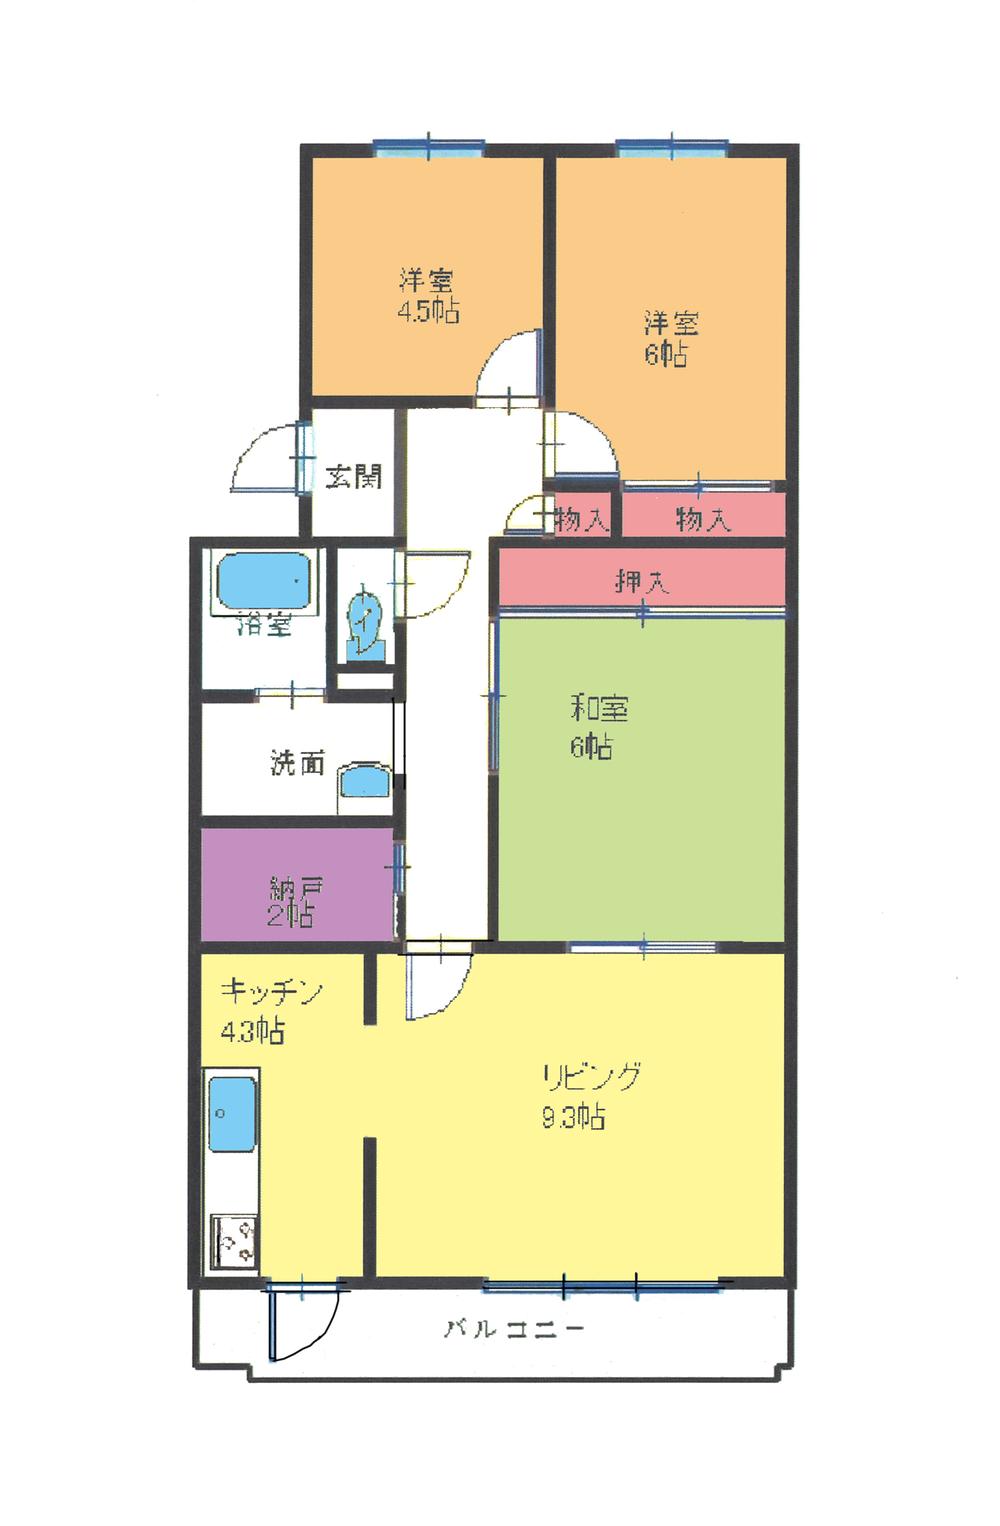 Floor plan. 3LDK + S (storeroom), Price $ 40,000, Occupied area 73.06 sq m , Balcony area 7.99 sq m floor plan